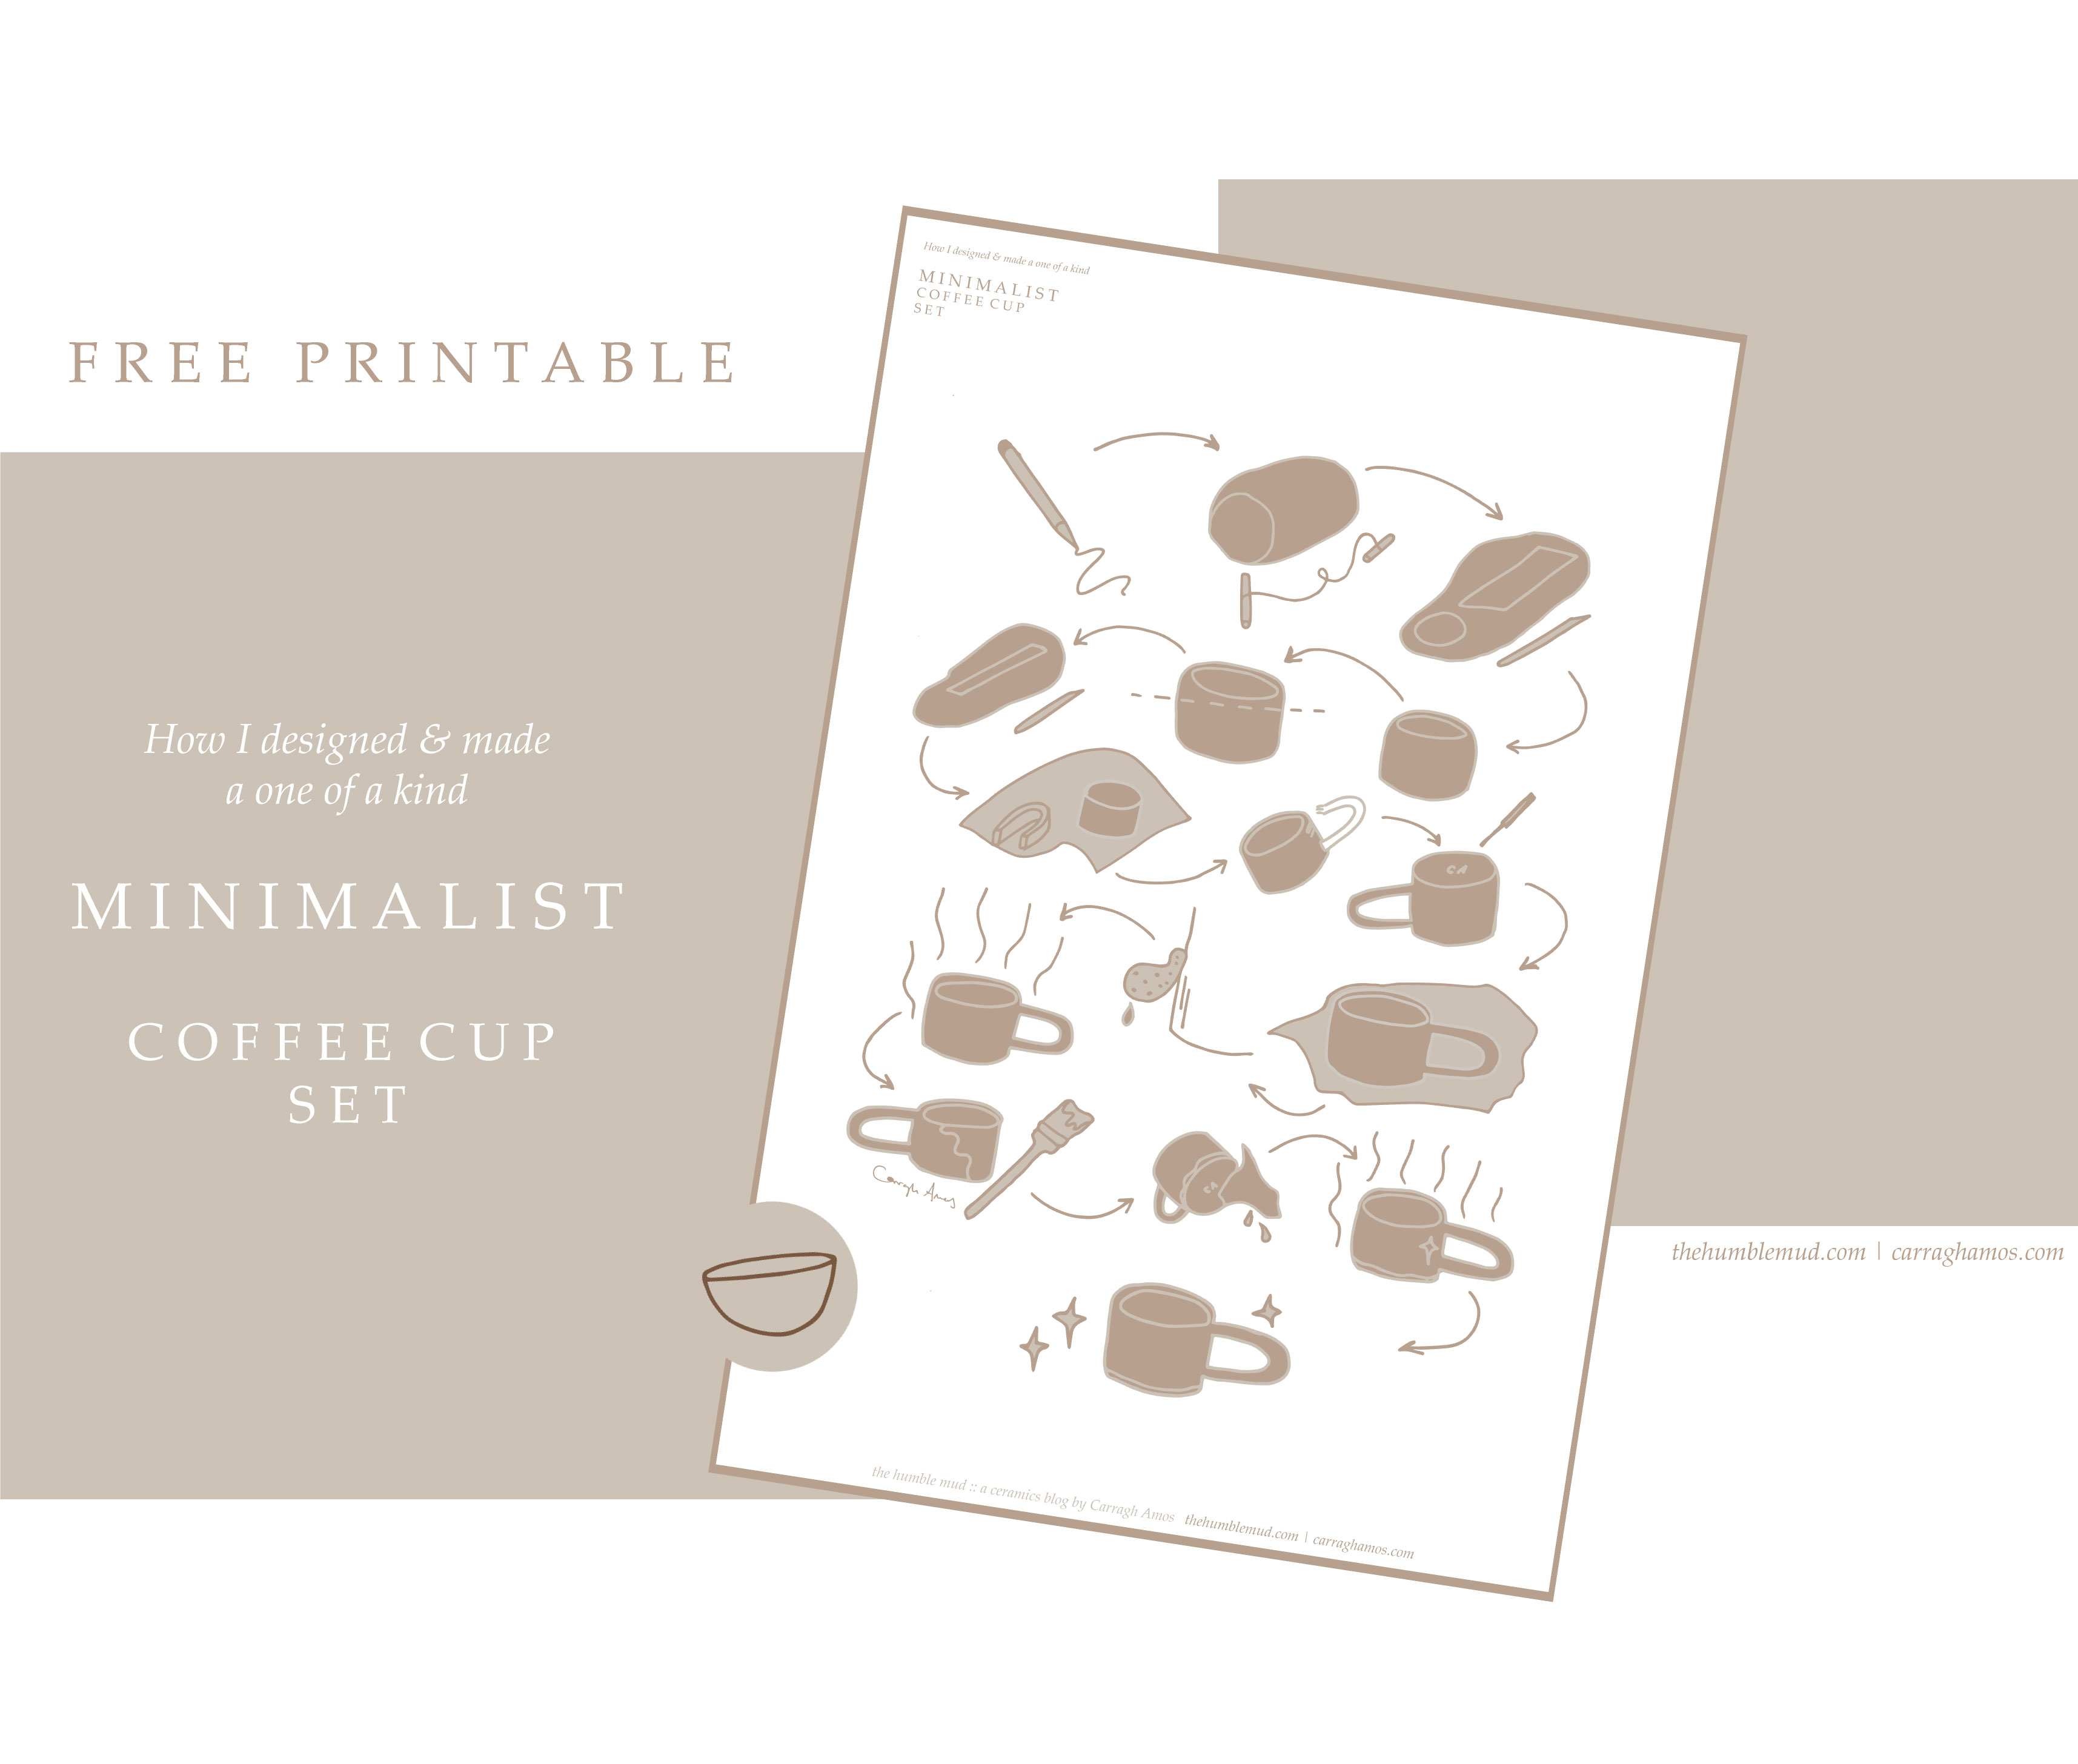  Free printable: jak zrobić ręcznie zbudowany kubek z płyty za darmo do druku. Ilustrowany minimalistyczny zestaw instrukcji filiżanki do kawy.